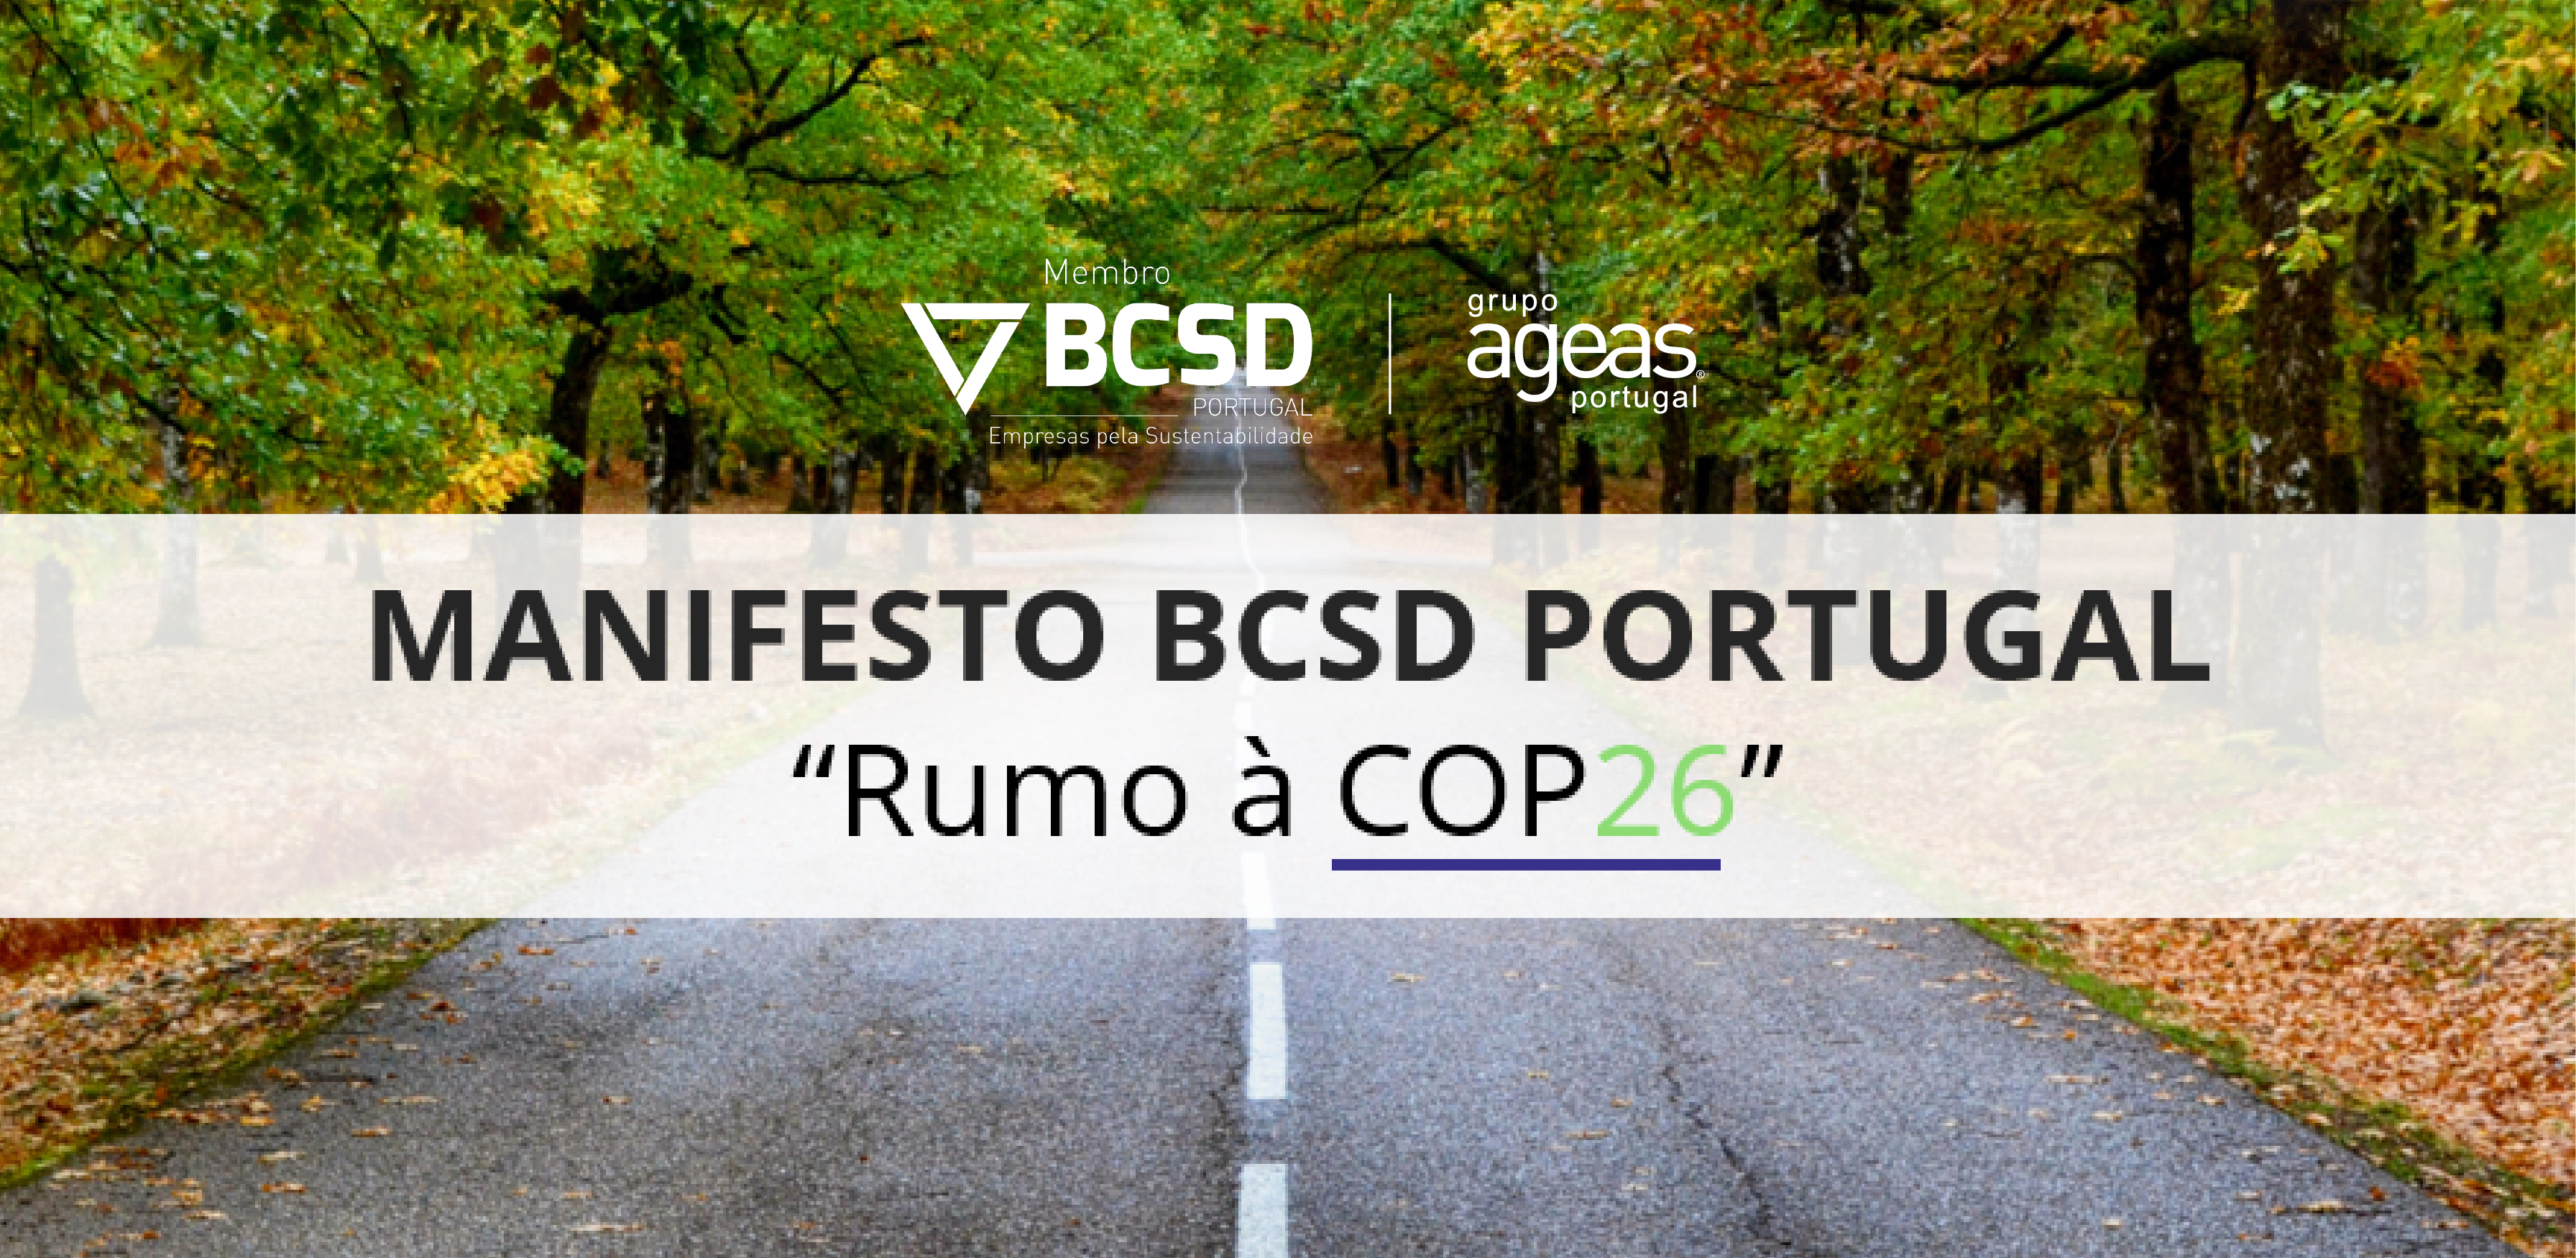 Manifesto BCSD Portugal "Rumo à COP26"